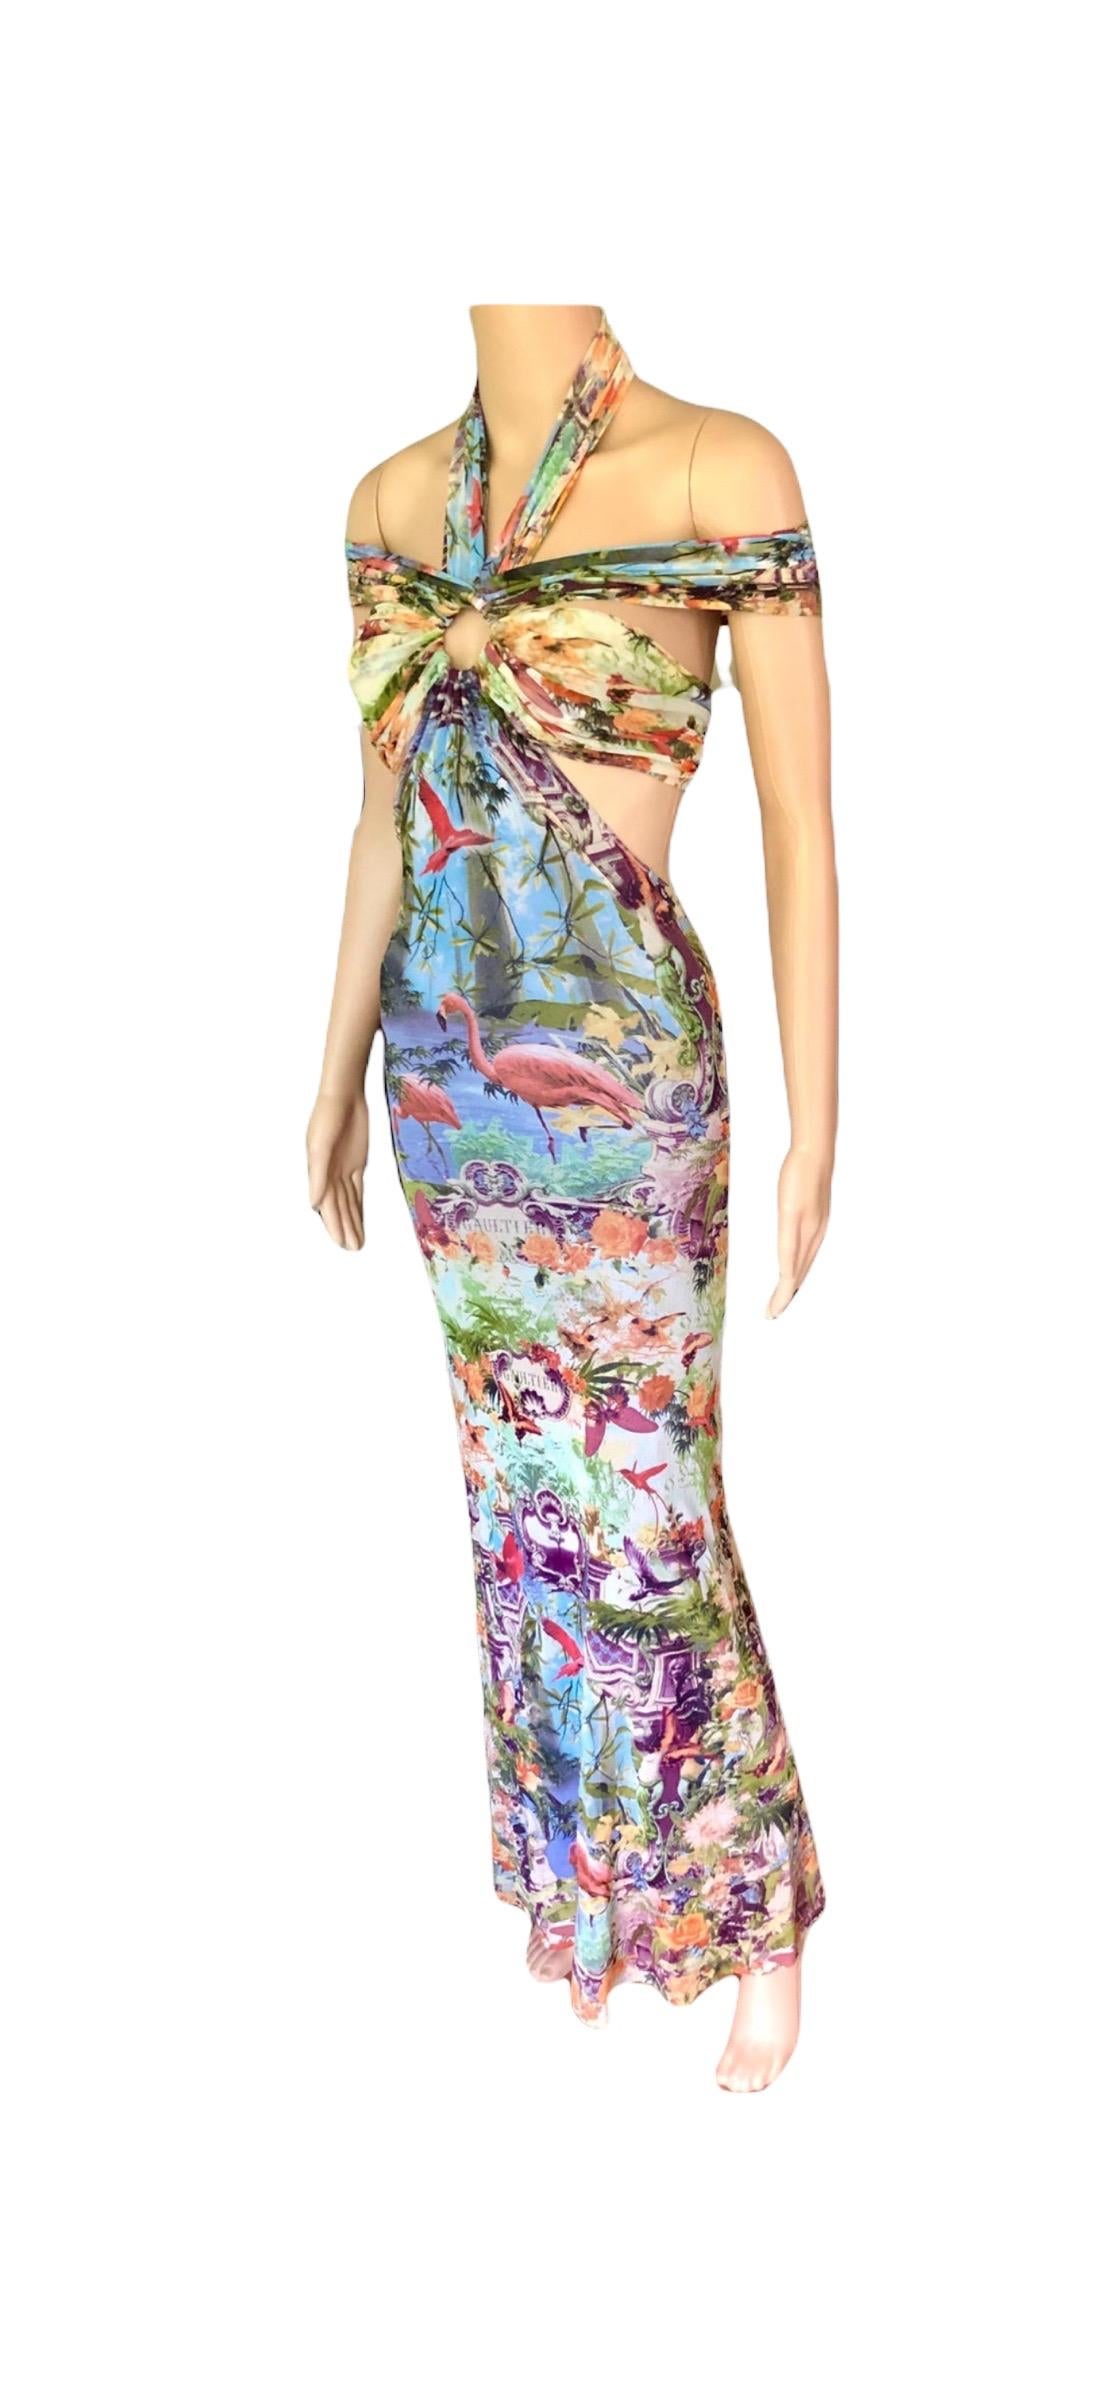 Jean Paul Gaultier Soleil S/S1999 Flamingo Tropical Print Cutout Mesh Maxi Dress For Sale 11